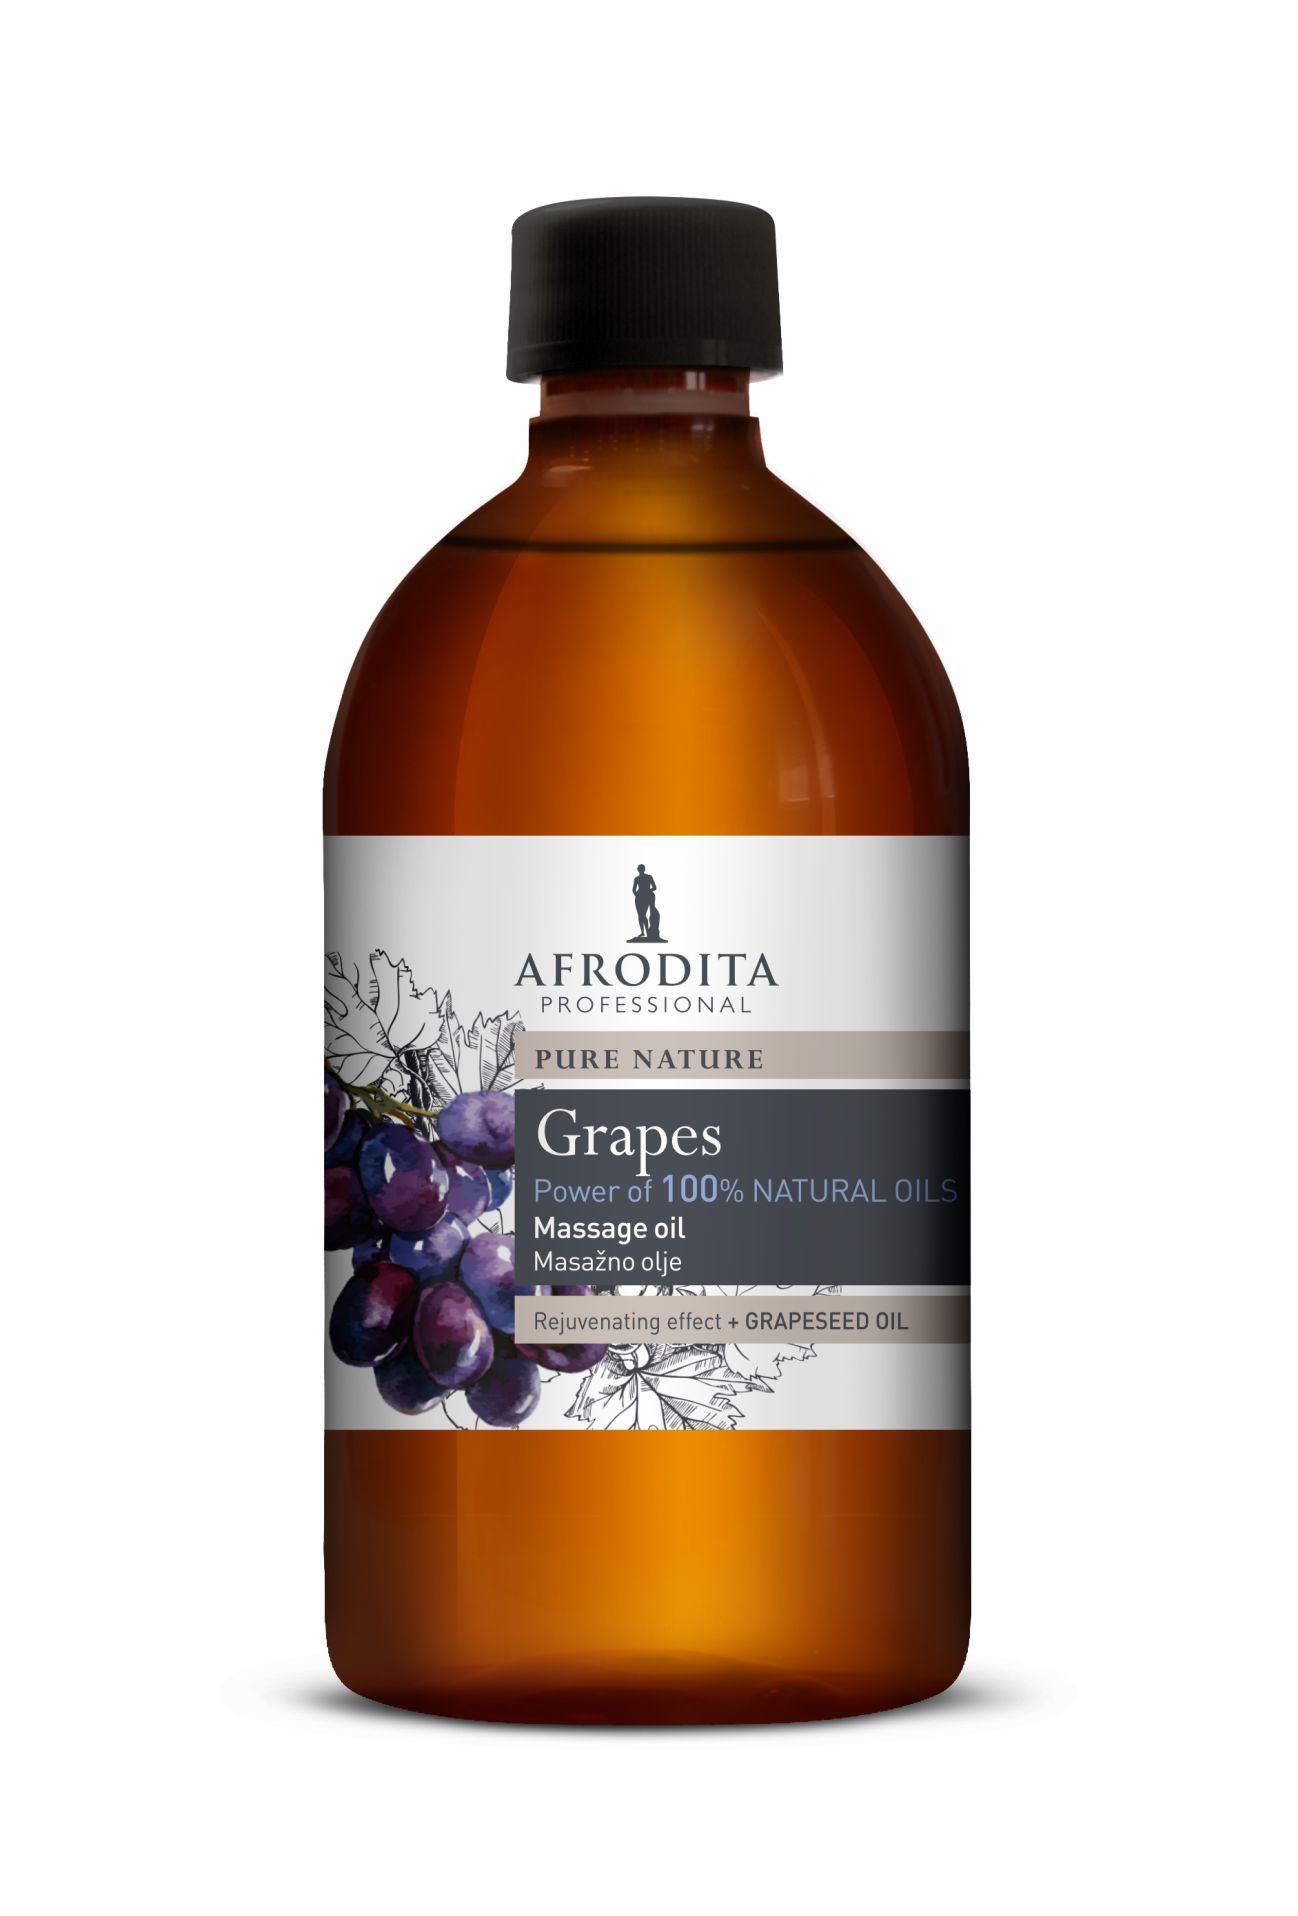 Kozmetika Afrodita - Olej Grapes do masażu twarzy i ciała 500 ml - Winogrona 